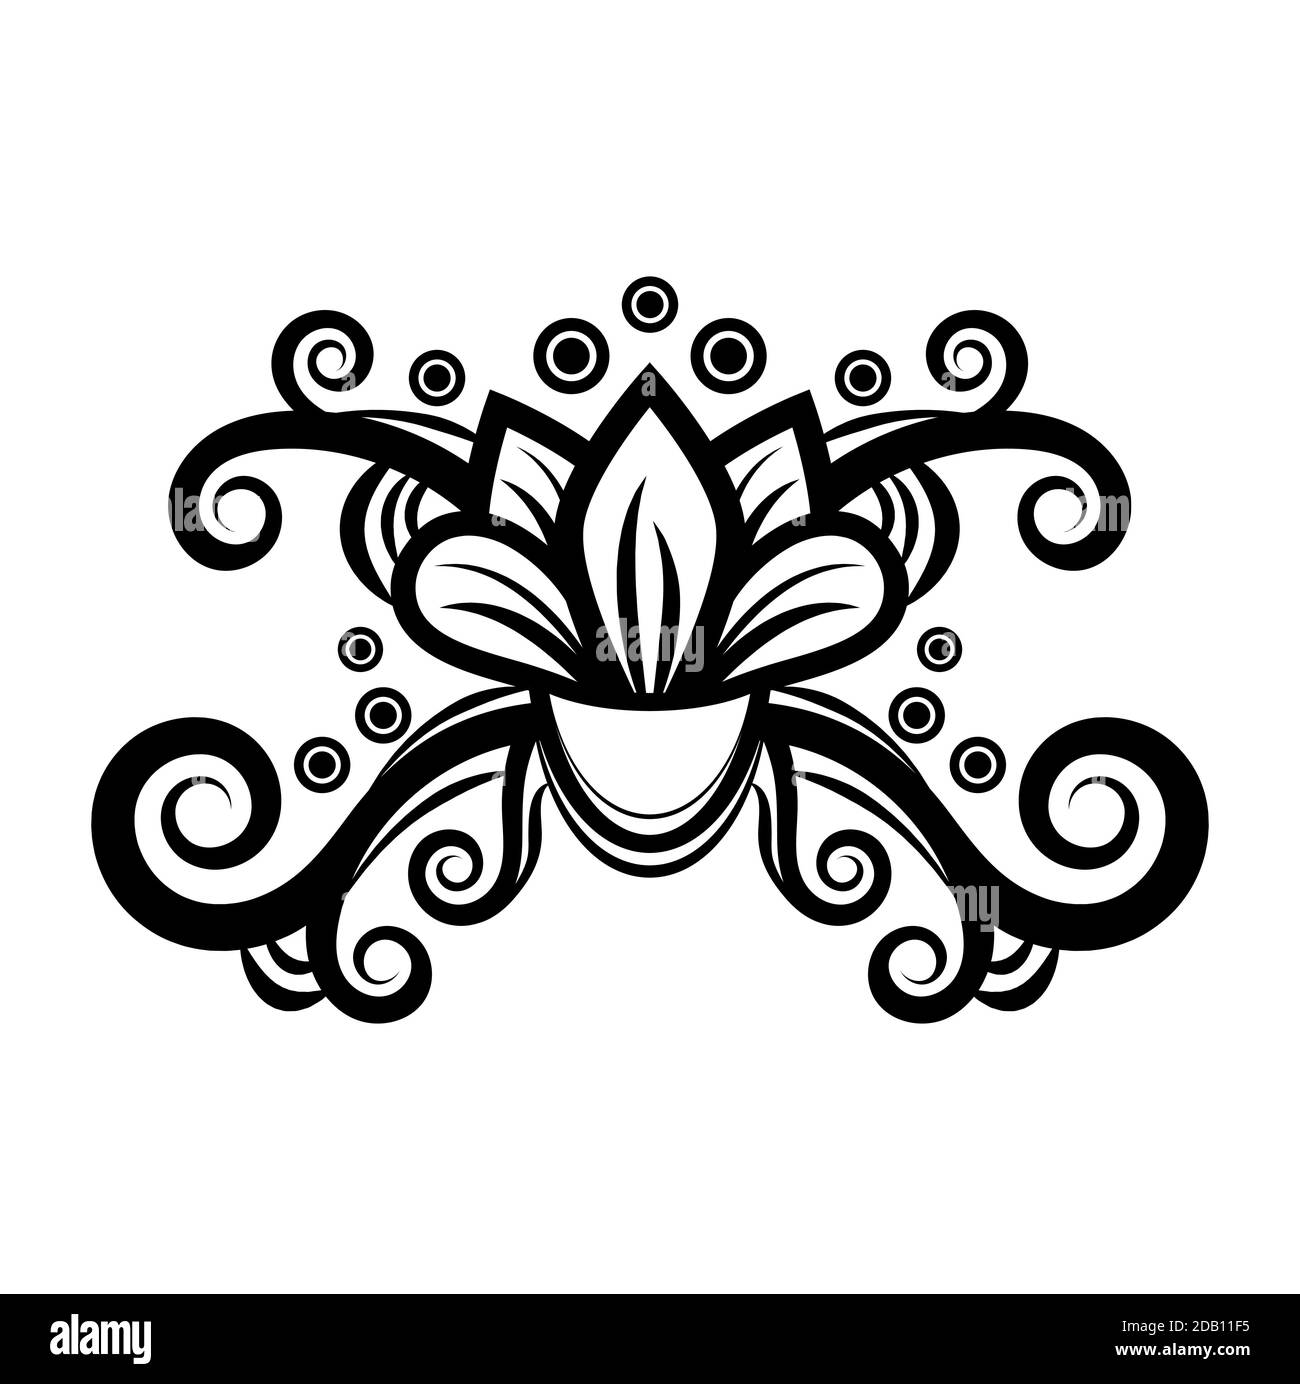 Décoration florale abstraite, motif ethnique, dessin noir et blanc avec boucles, spirales, fleurs, éléments décoratifs, imprimé, tatouage, coloriage iso Illustration de Vecteur